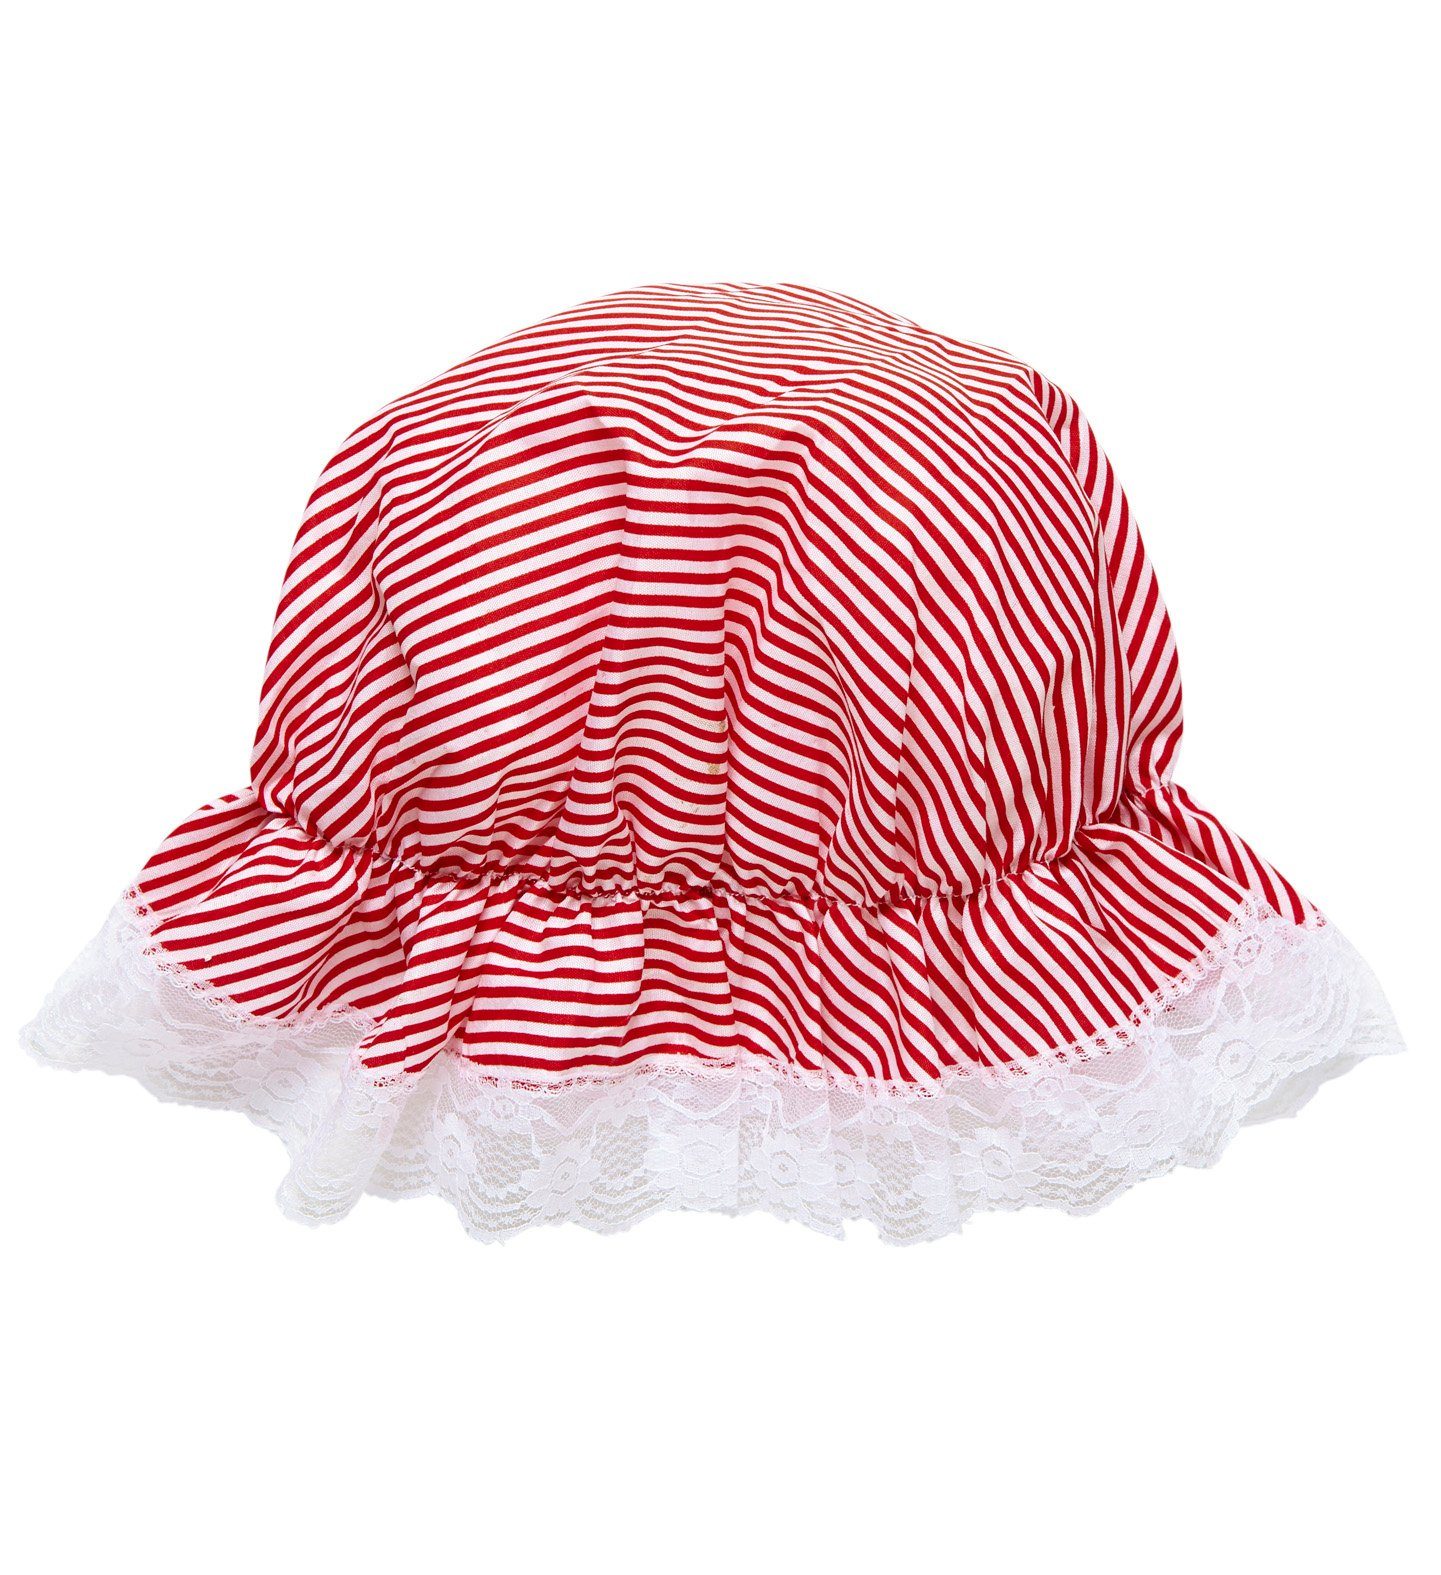 Widmann S.r.l. Kostüm Schlafhaube Mütze zum Kostüm 02426, Rot Weiß Gest